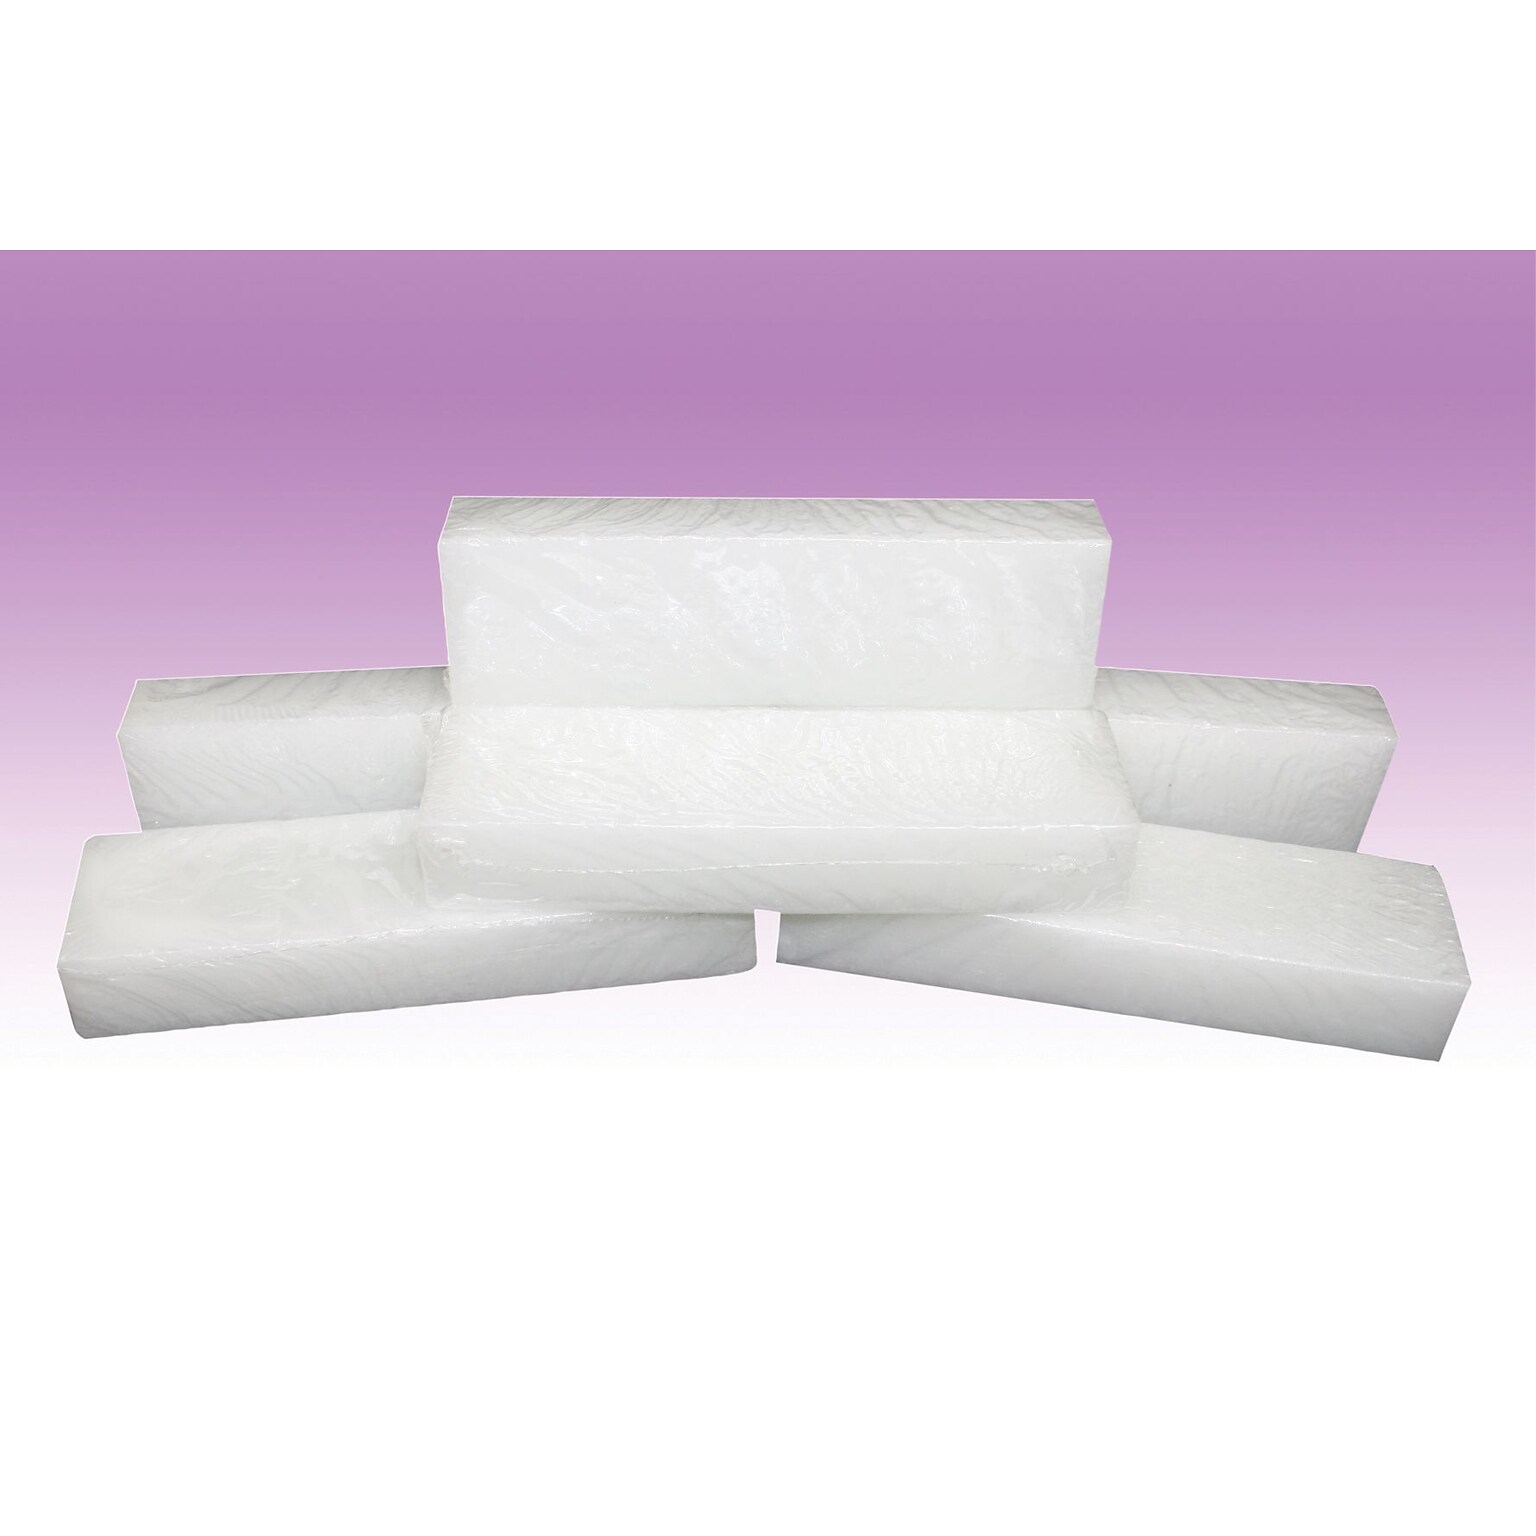 Waxwel Blocks, Lavender Paraffin Wax Refill 36 Lb. (6 6-Lb. Boxes)